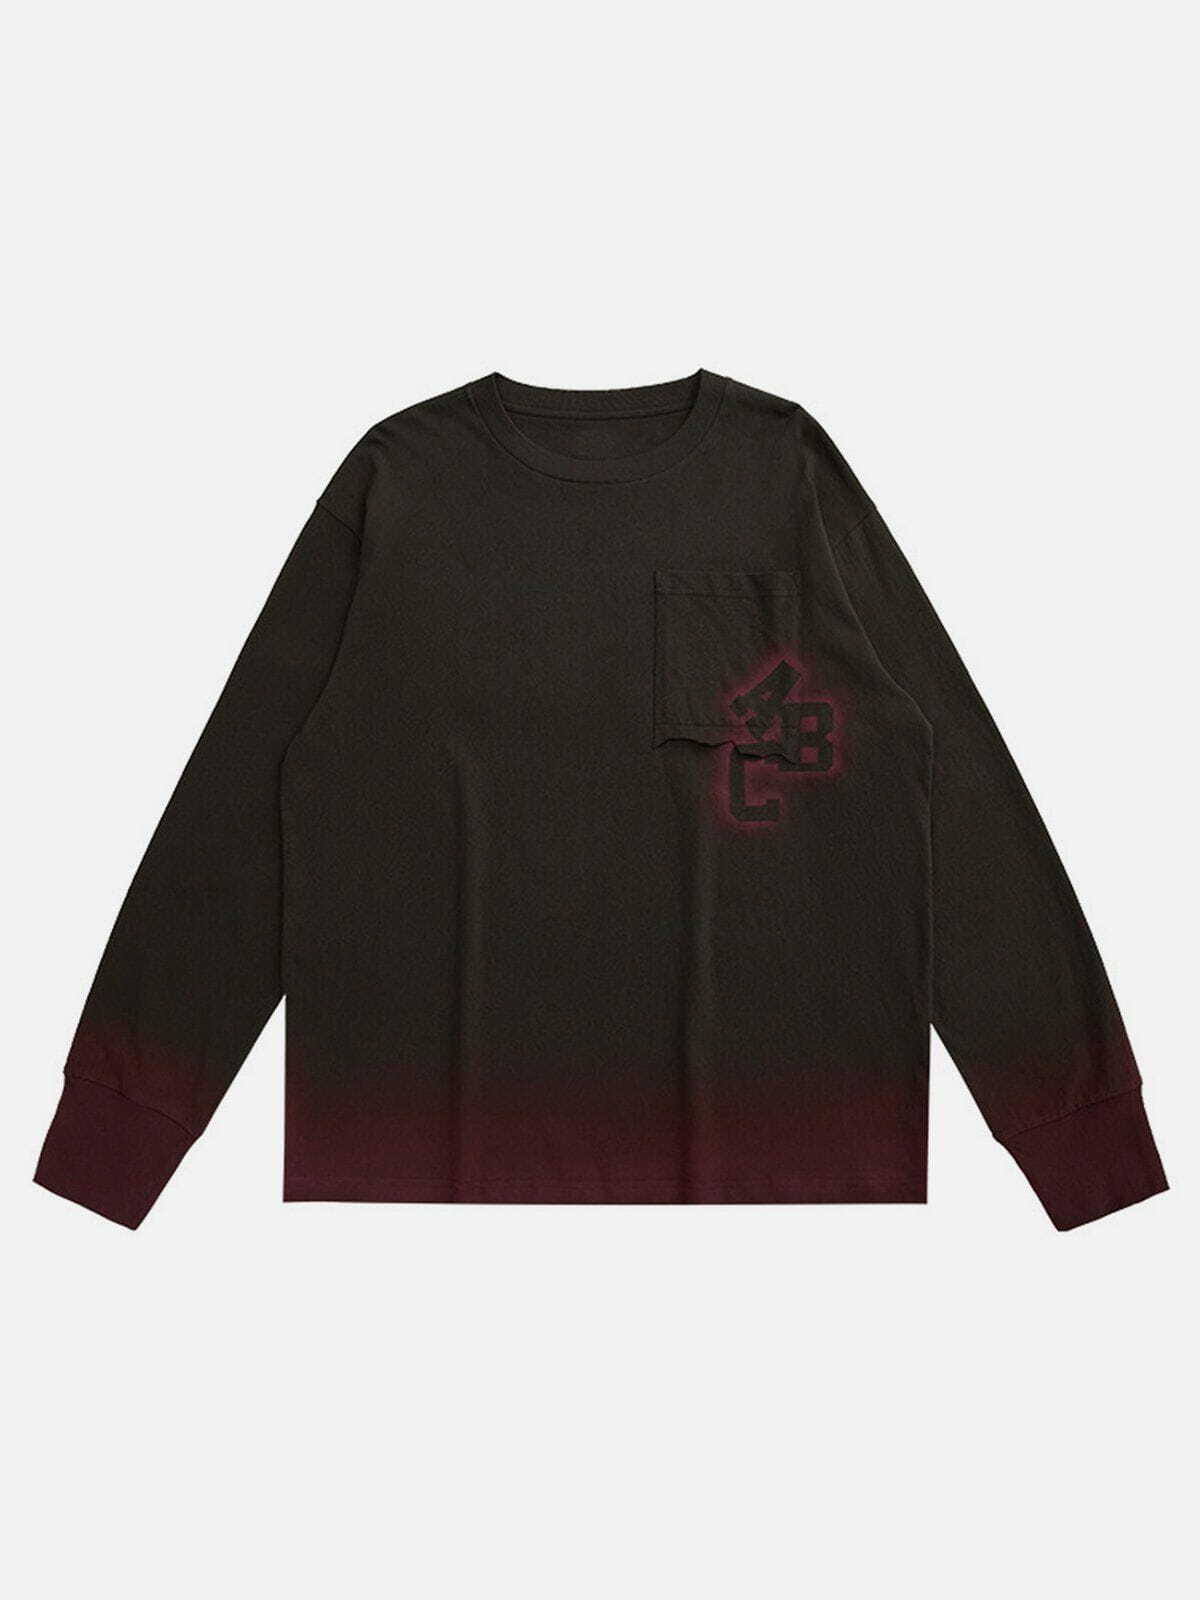 blooming gradient sweatshirt edgy streetwear essential 1840